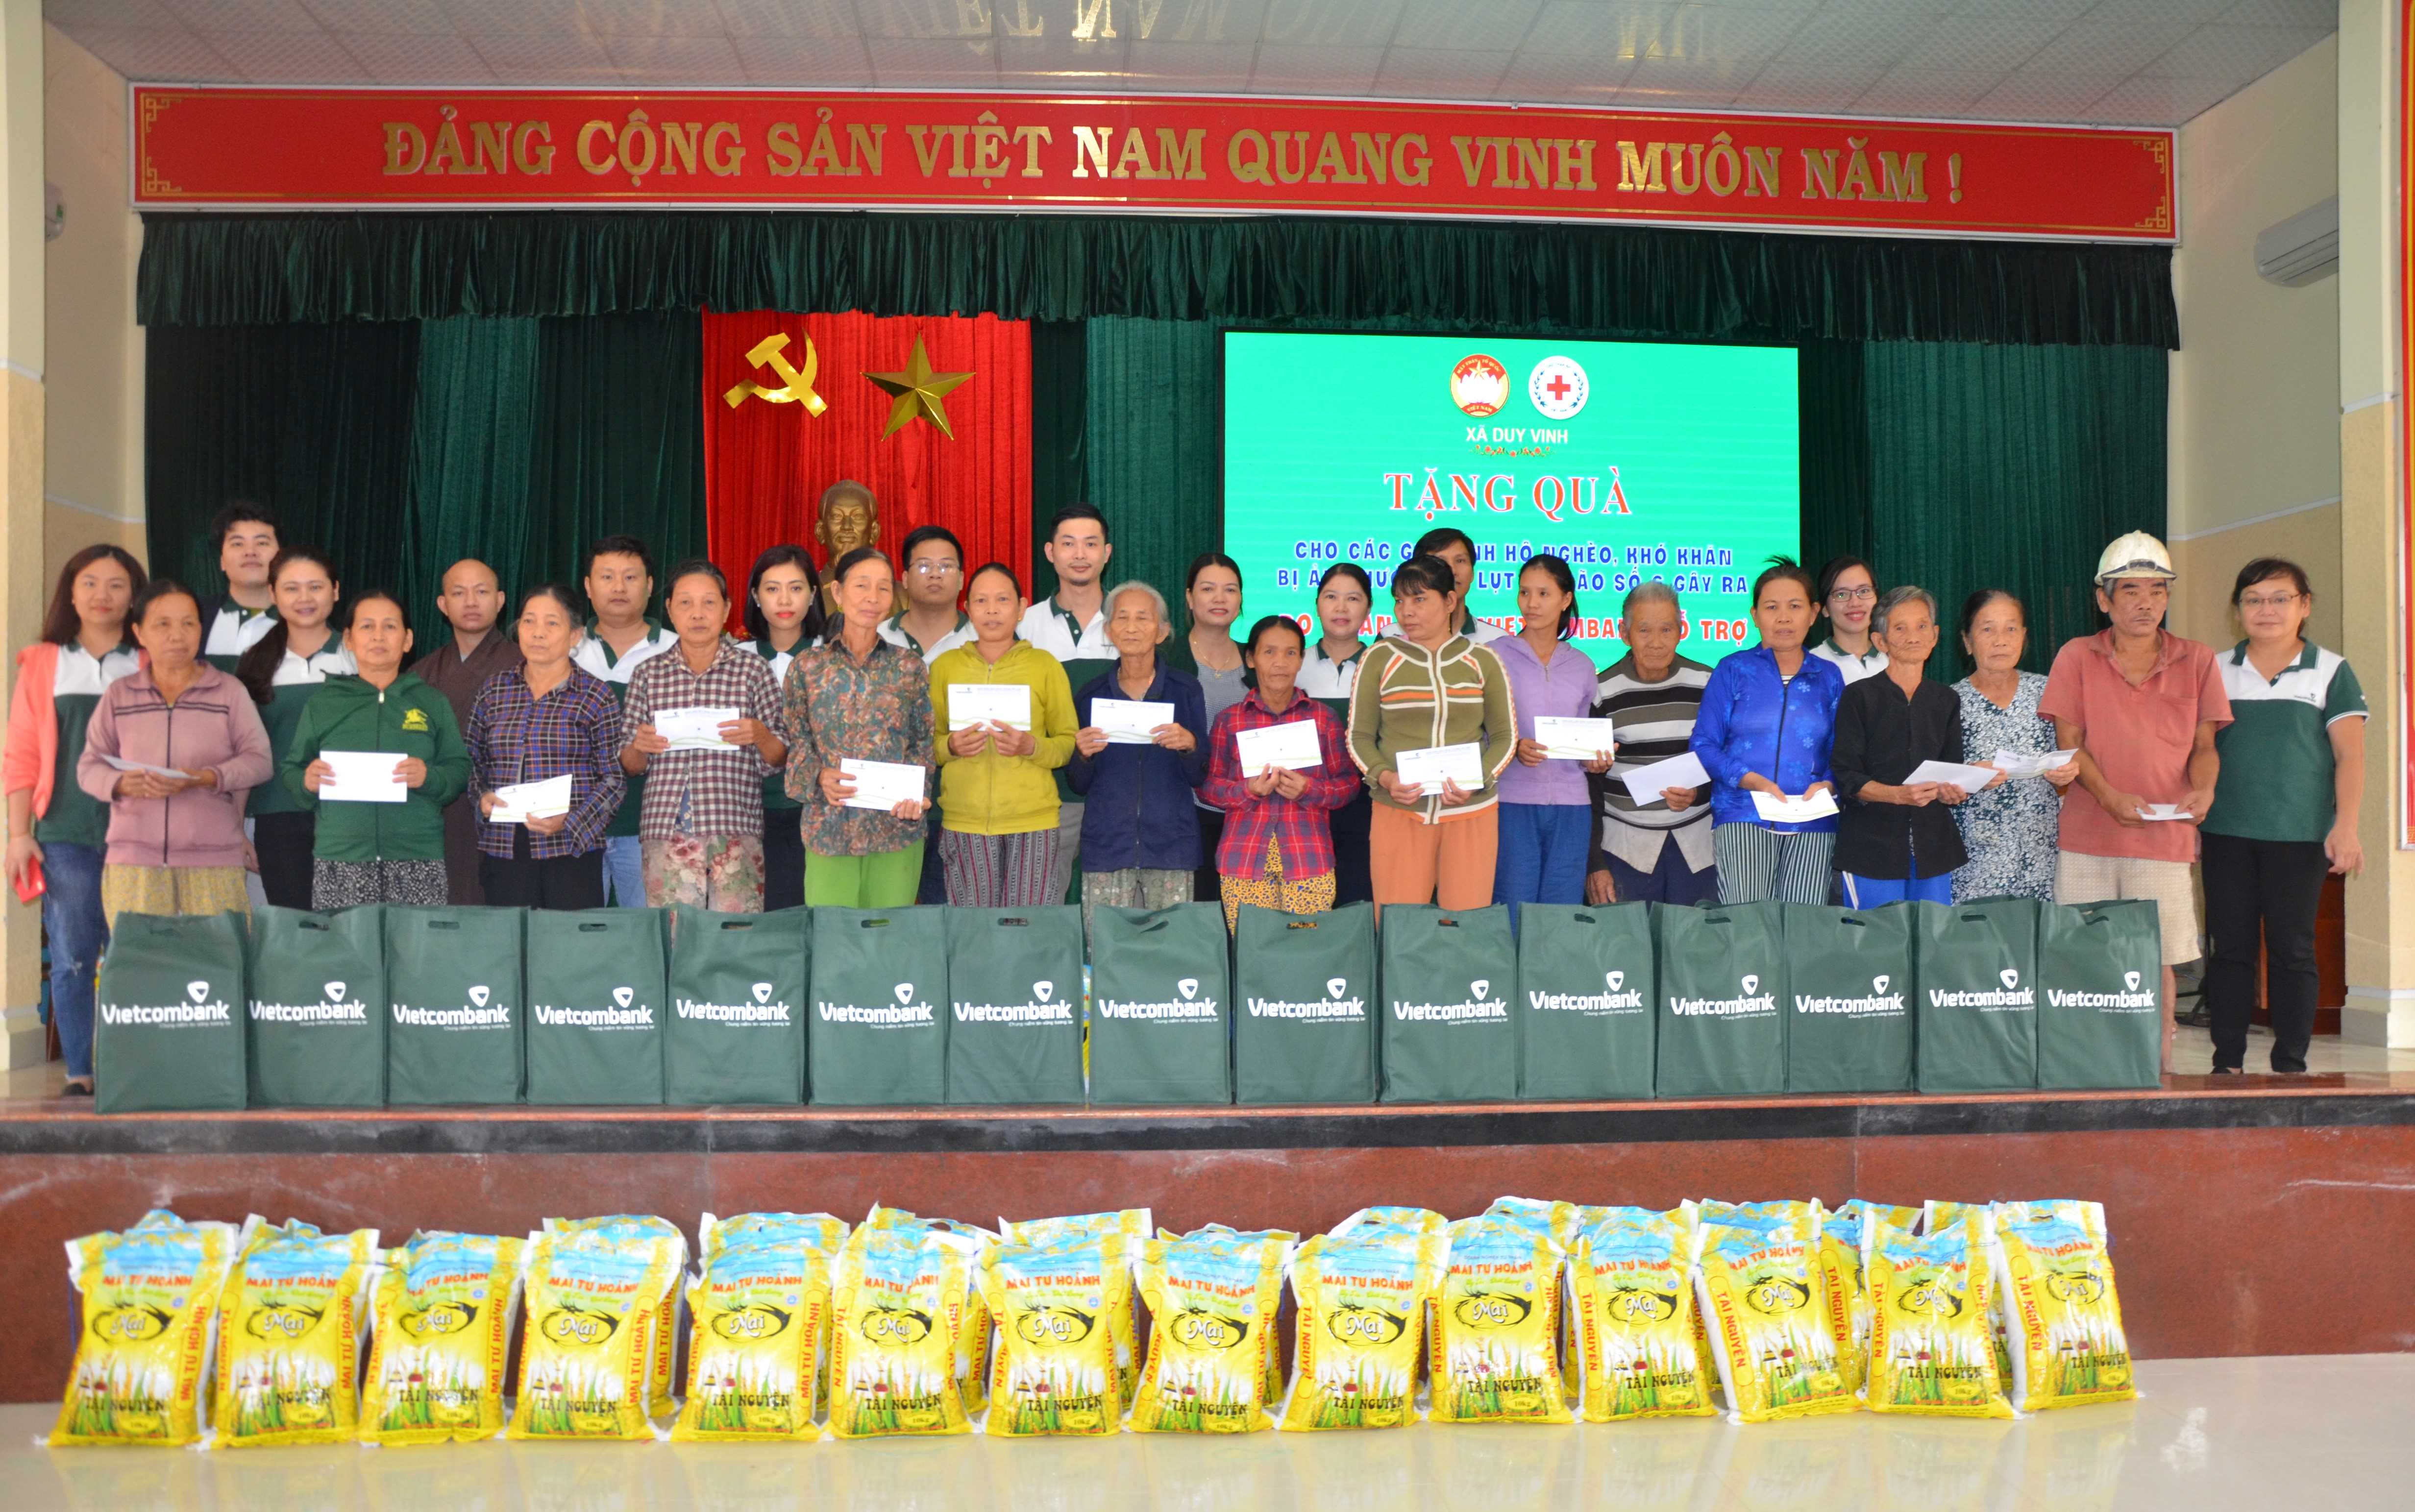 Các chi nhánh Vietcombank trên địa bàn TP.HCM và Vietcombank Quảng Nam tặng quà hỗ trợ người dân tỉnh Quảng Nam bị ảnh hưởng bởi bão lũ